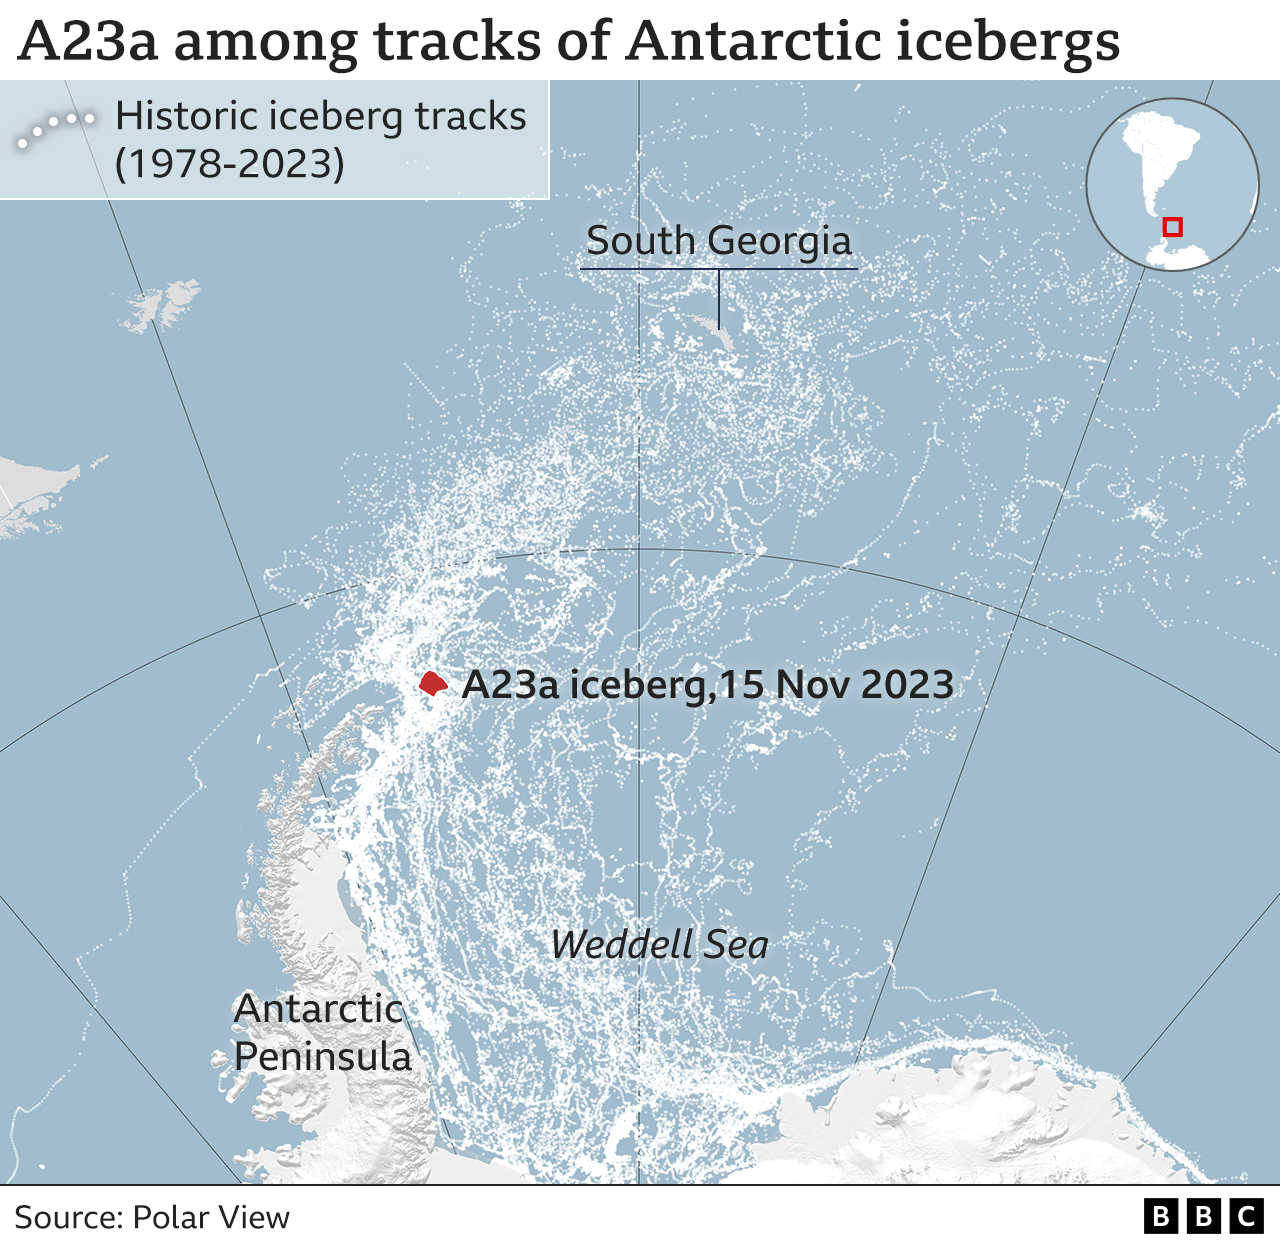 Iceberg tracks